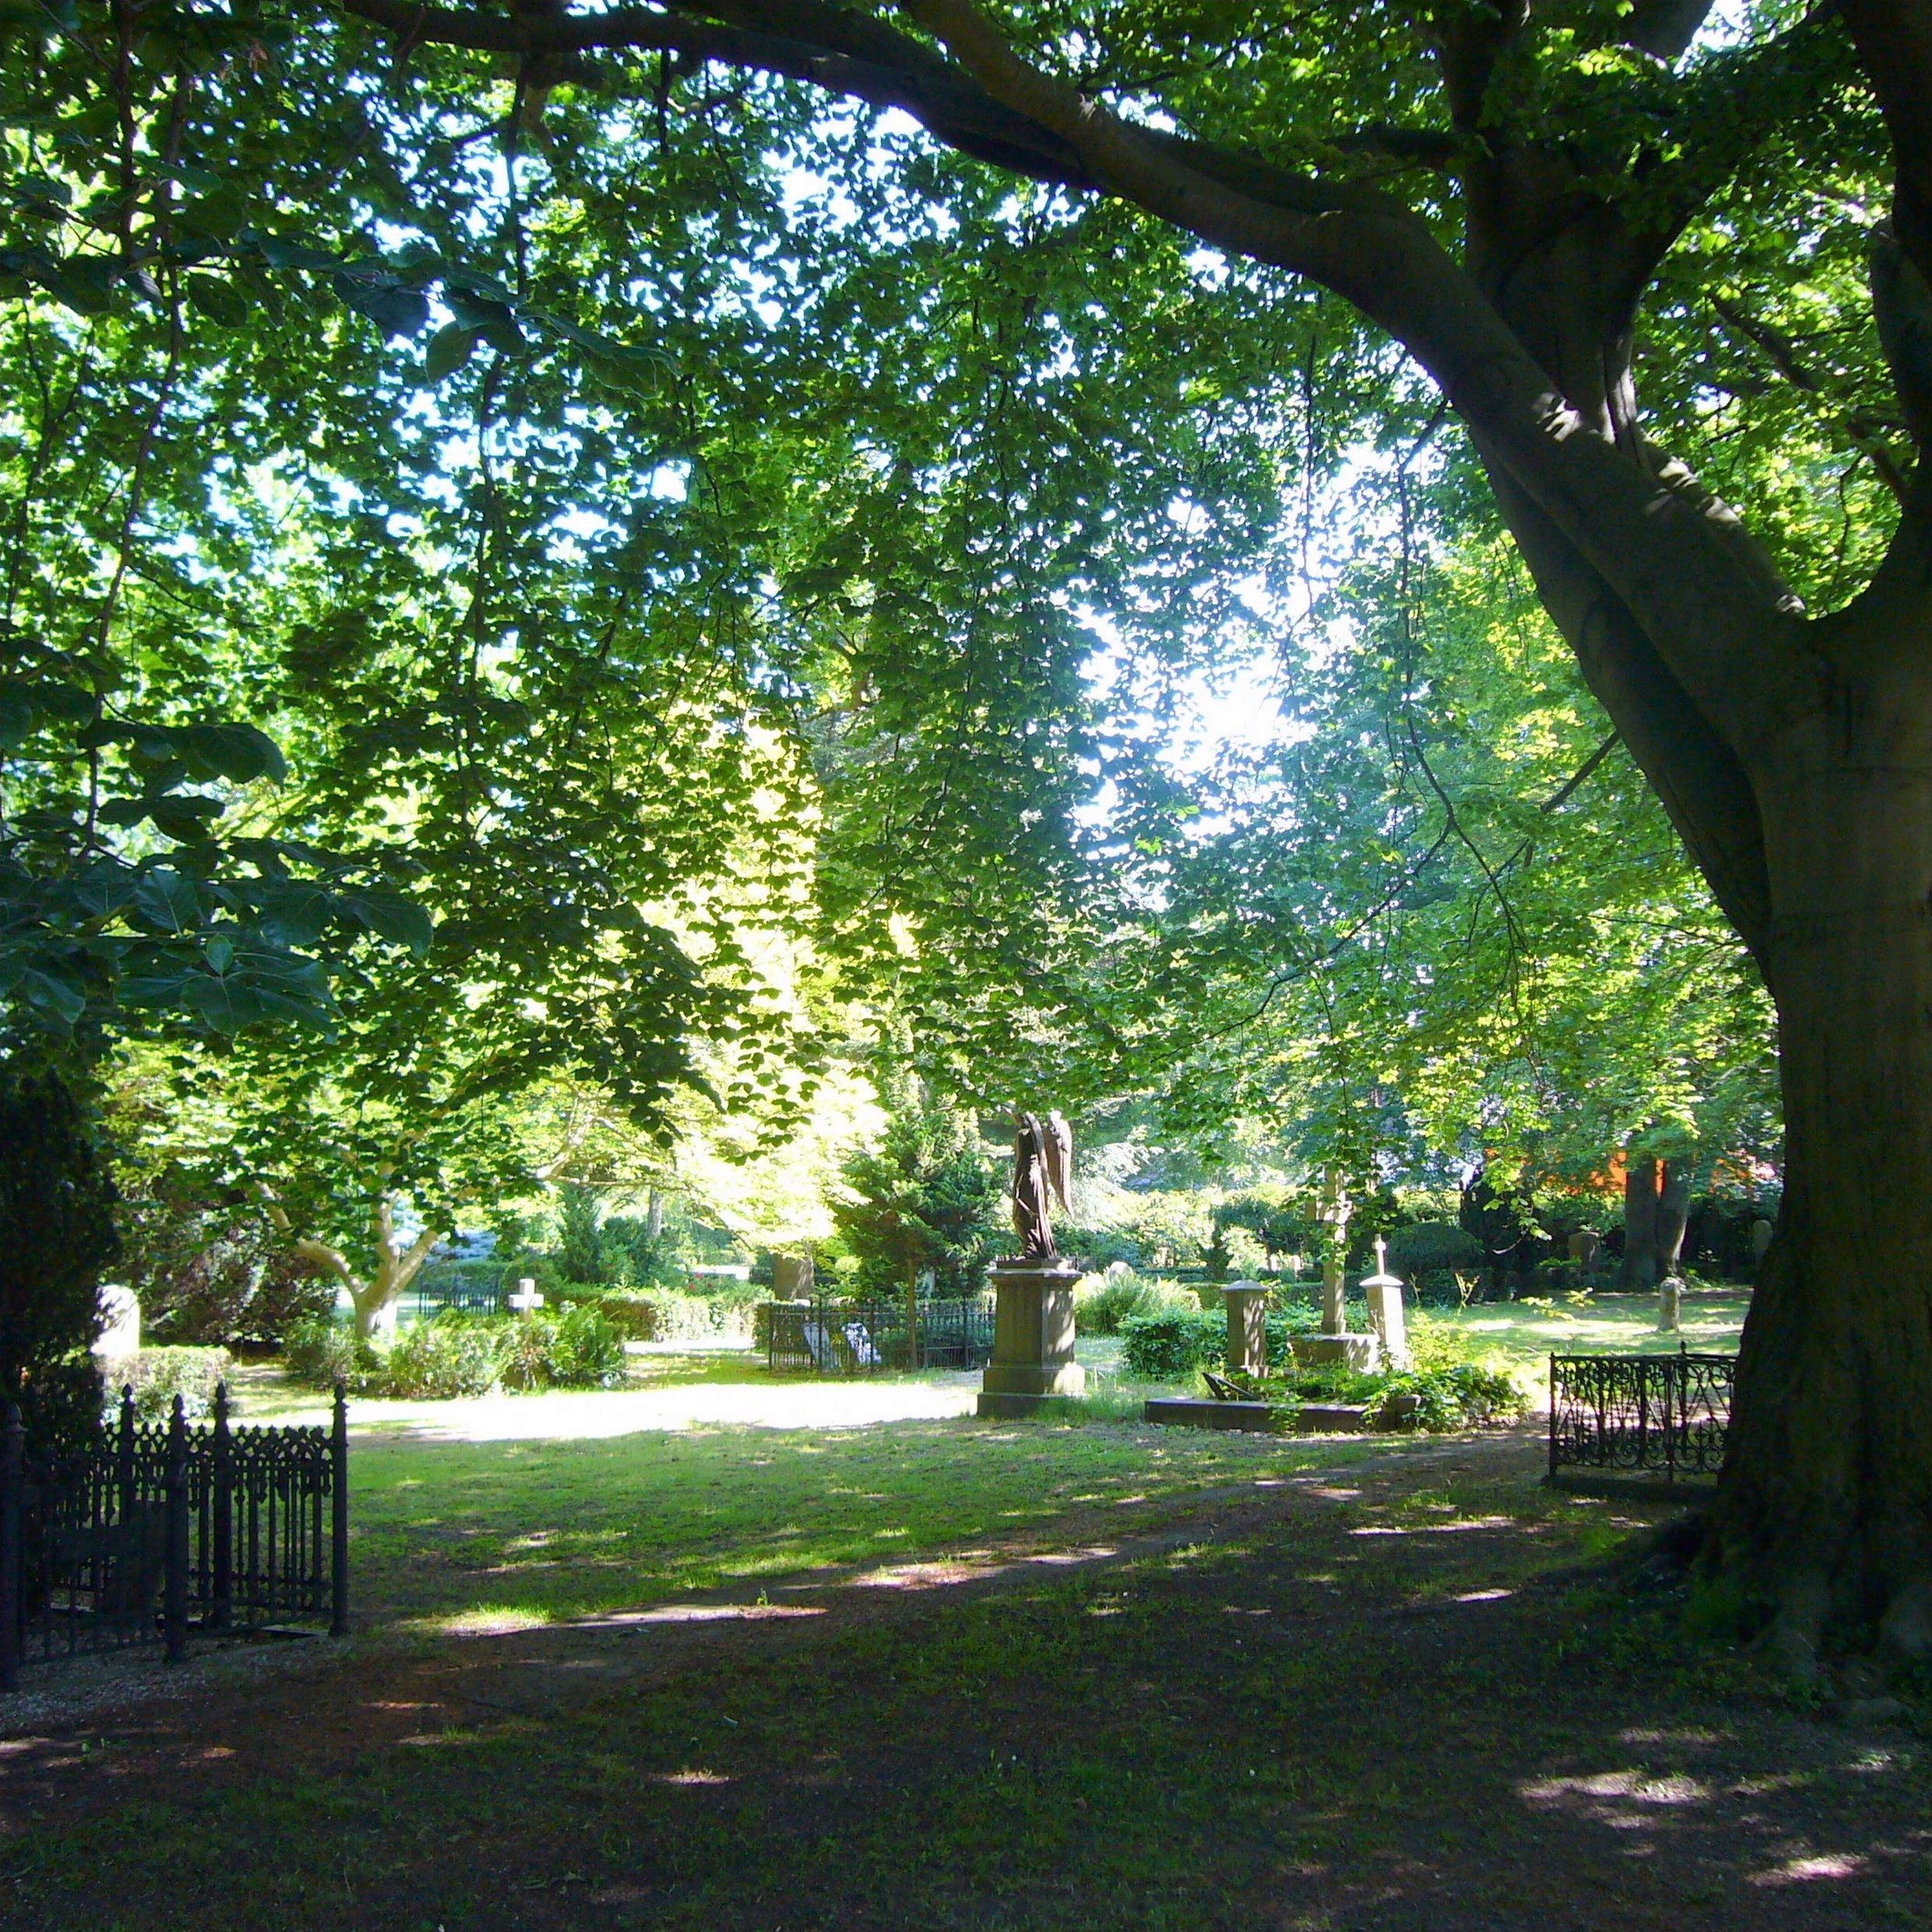 Lokale Zusammenfassung: Änderung der Friedhöfe, um Platz für mehr Parkfläche in Frederiksberg zu schaffen